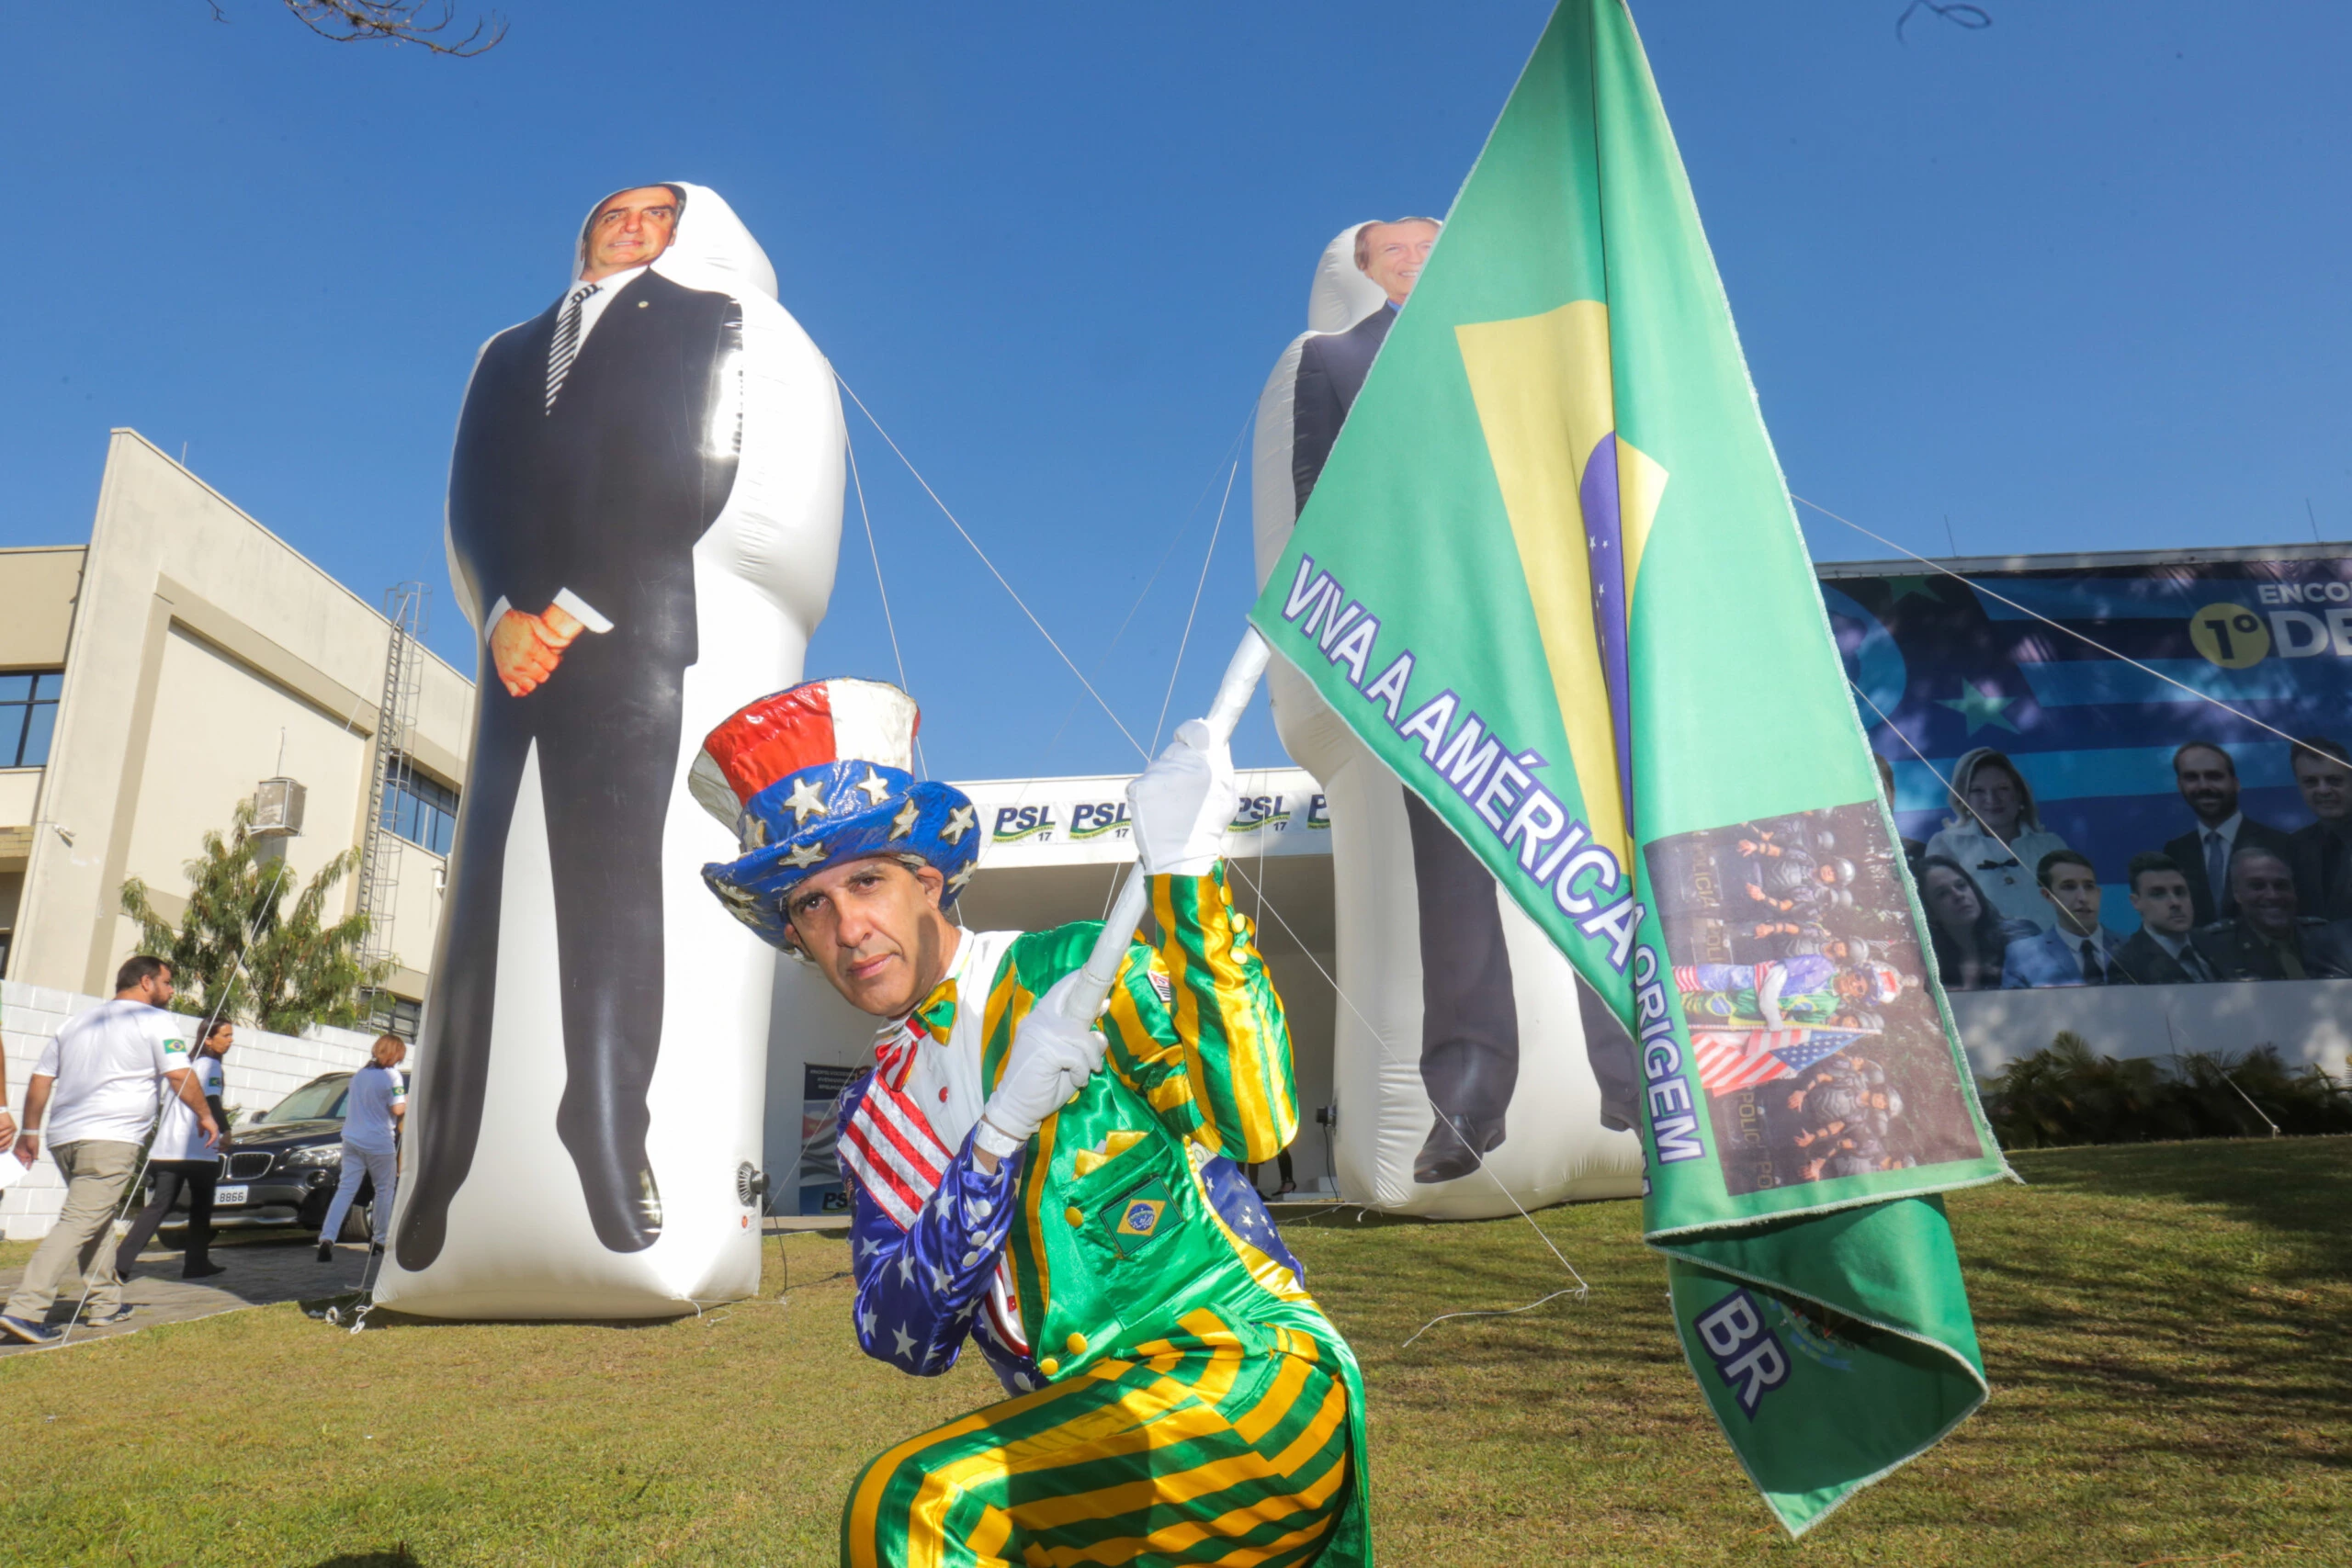 Participante em frente ao local do evento do PSL, onde foram inflados dois bonecos gigantes com os rostos de Jair Bolsonaro e do presidente nacional do partido, Luciano Bivar.